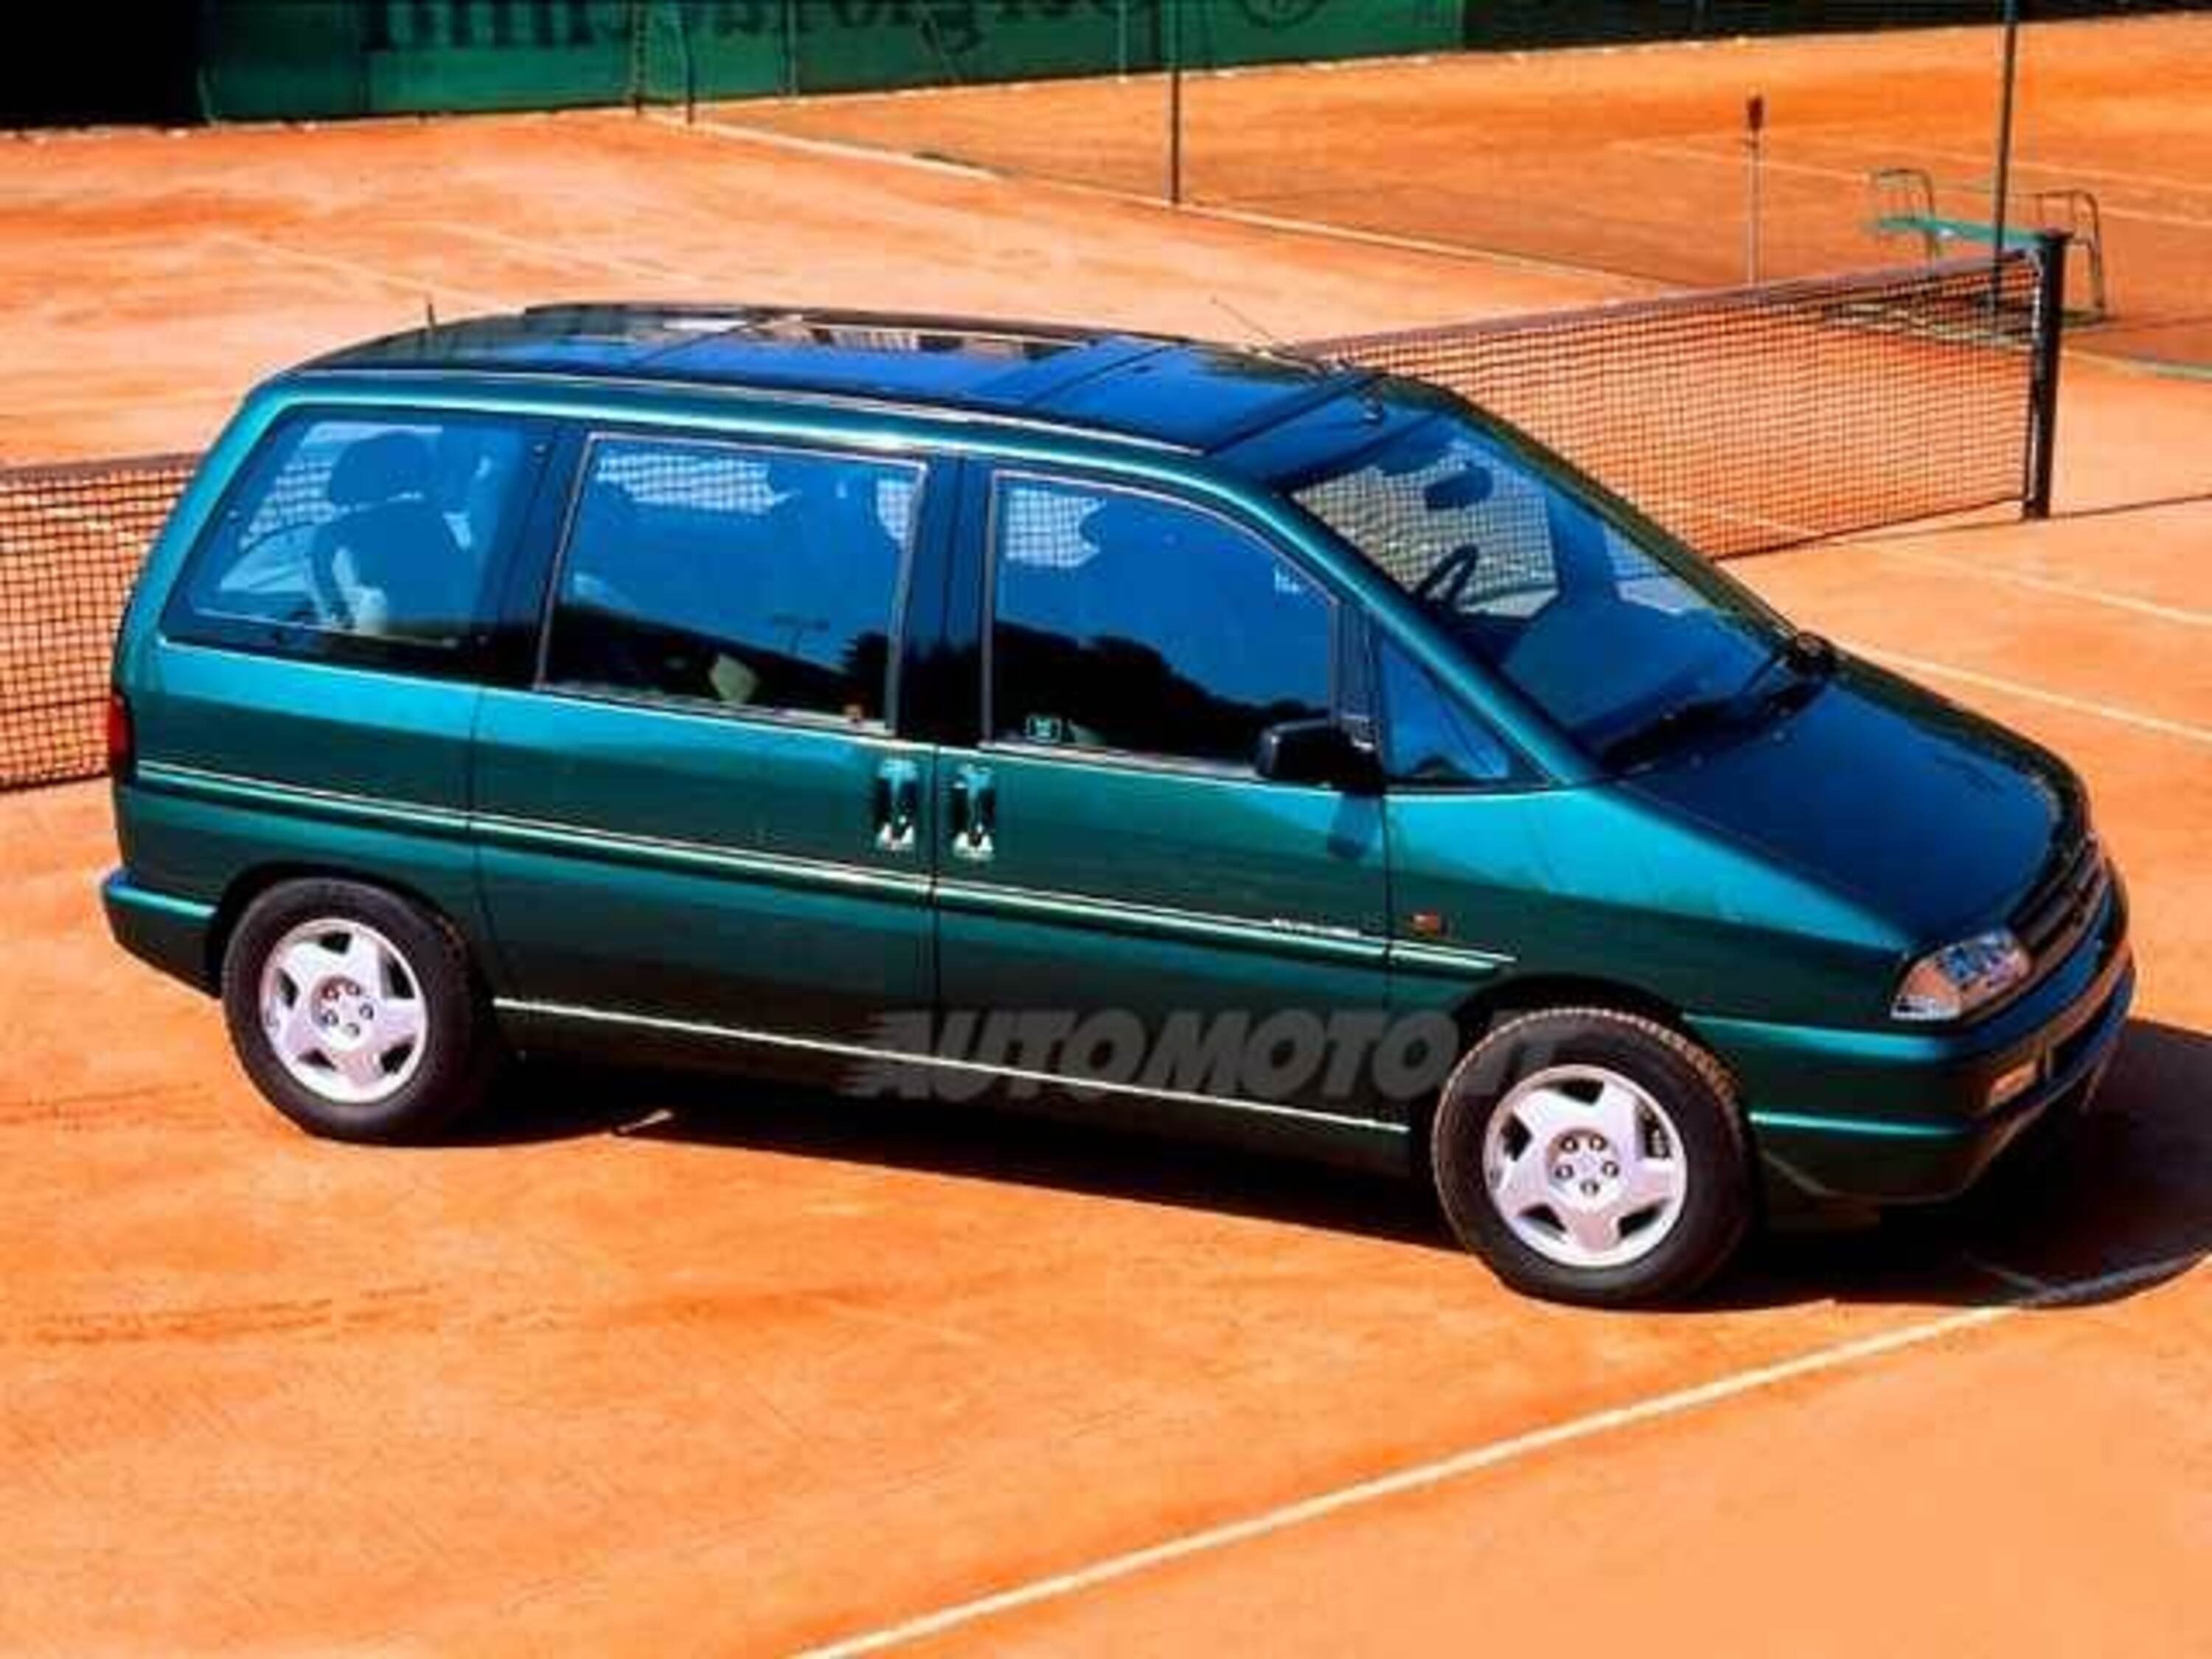 Peugeot 806 turbo cat Roland Garros 